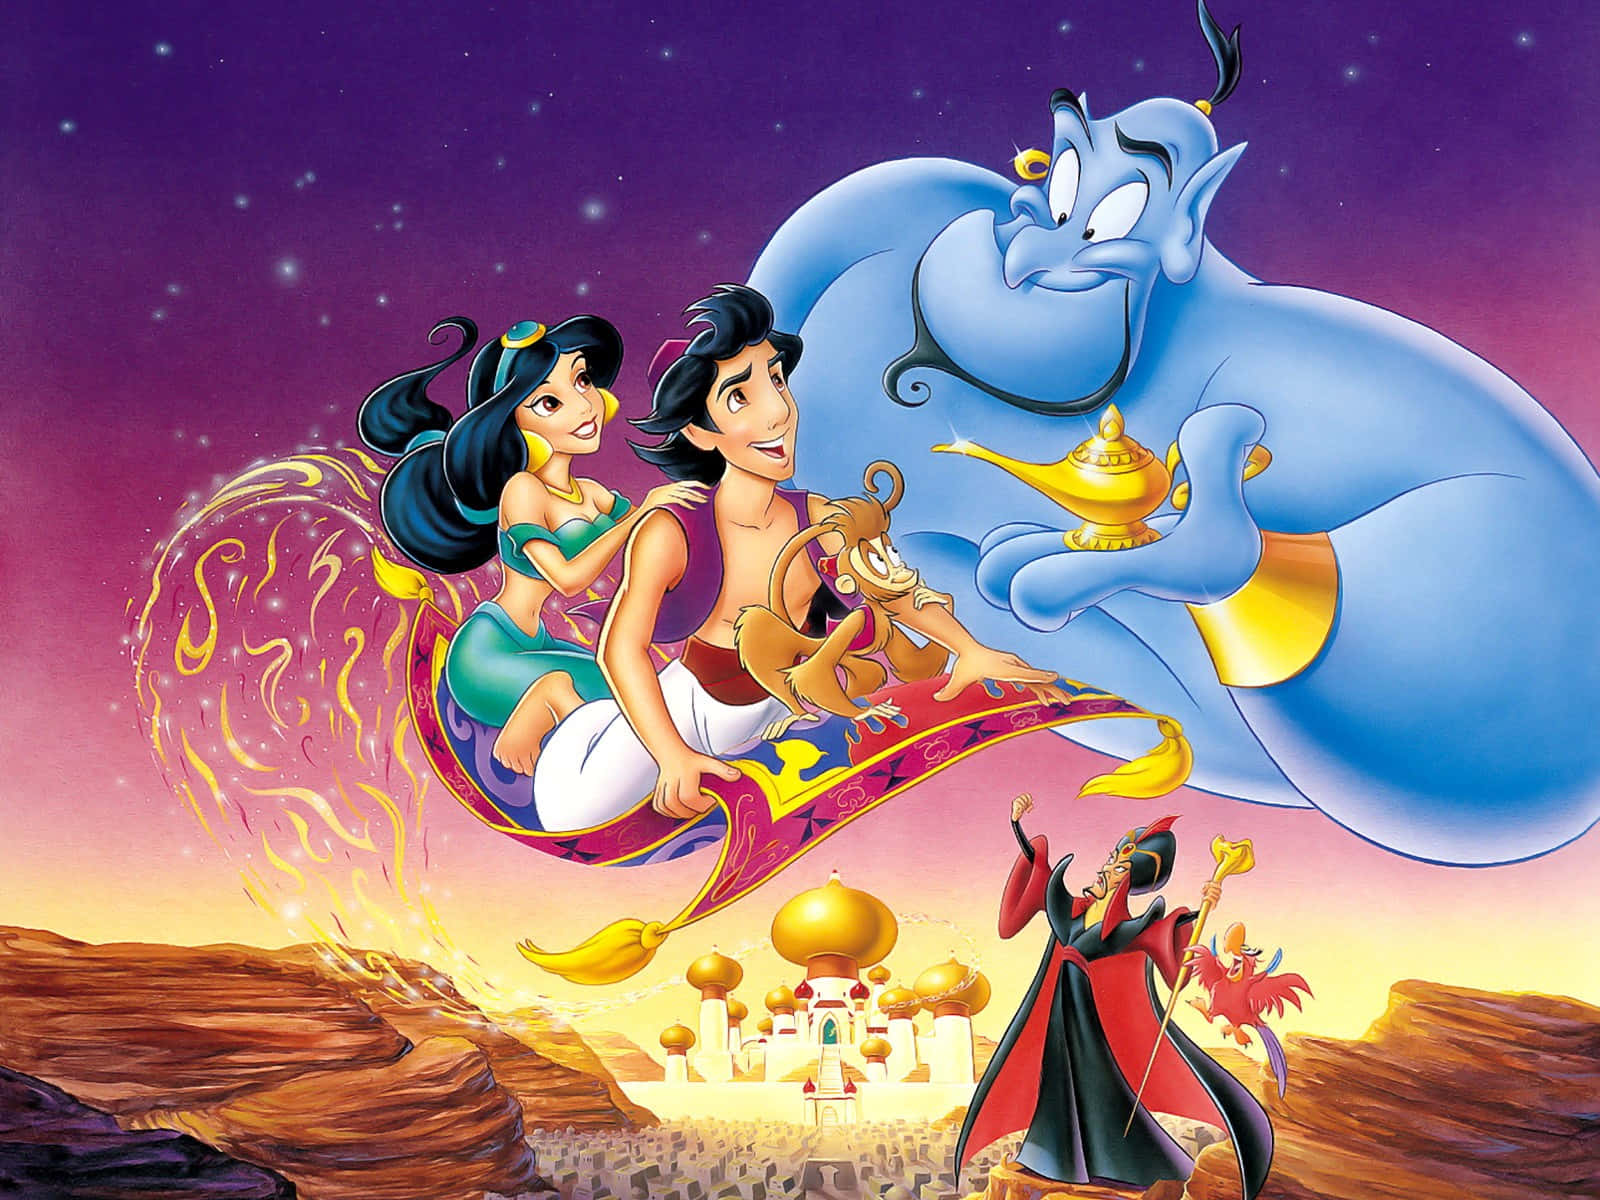 Aladdin,o Rato De Rua, Está Prestes A Embarcar Em Uma Aventura Mágica.